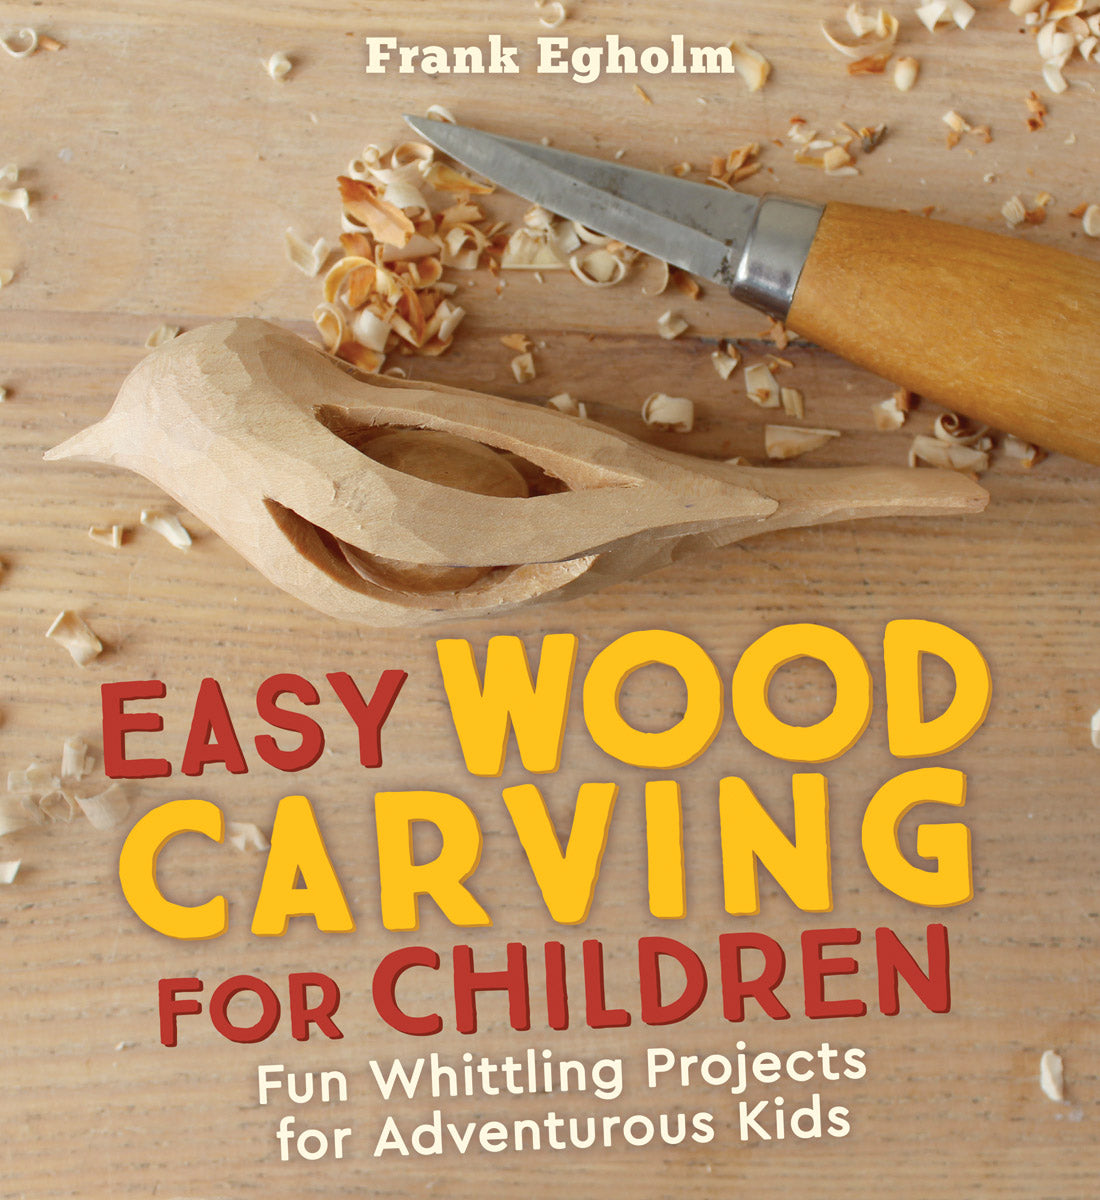 BeaverCraft Wood Carving Kit S16 - Whittling Wood Knives Kit - Widdling Kit for Beginners - Wood Carving Knife Set Wood Blocks Blank (Whittling Knives